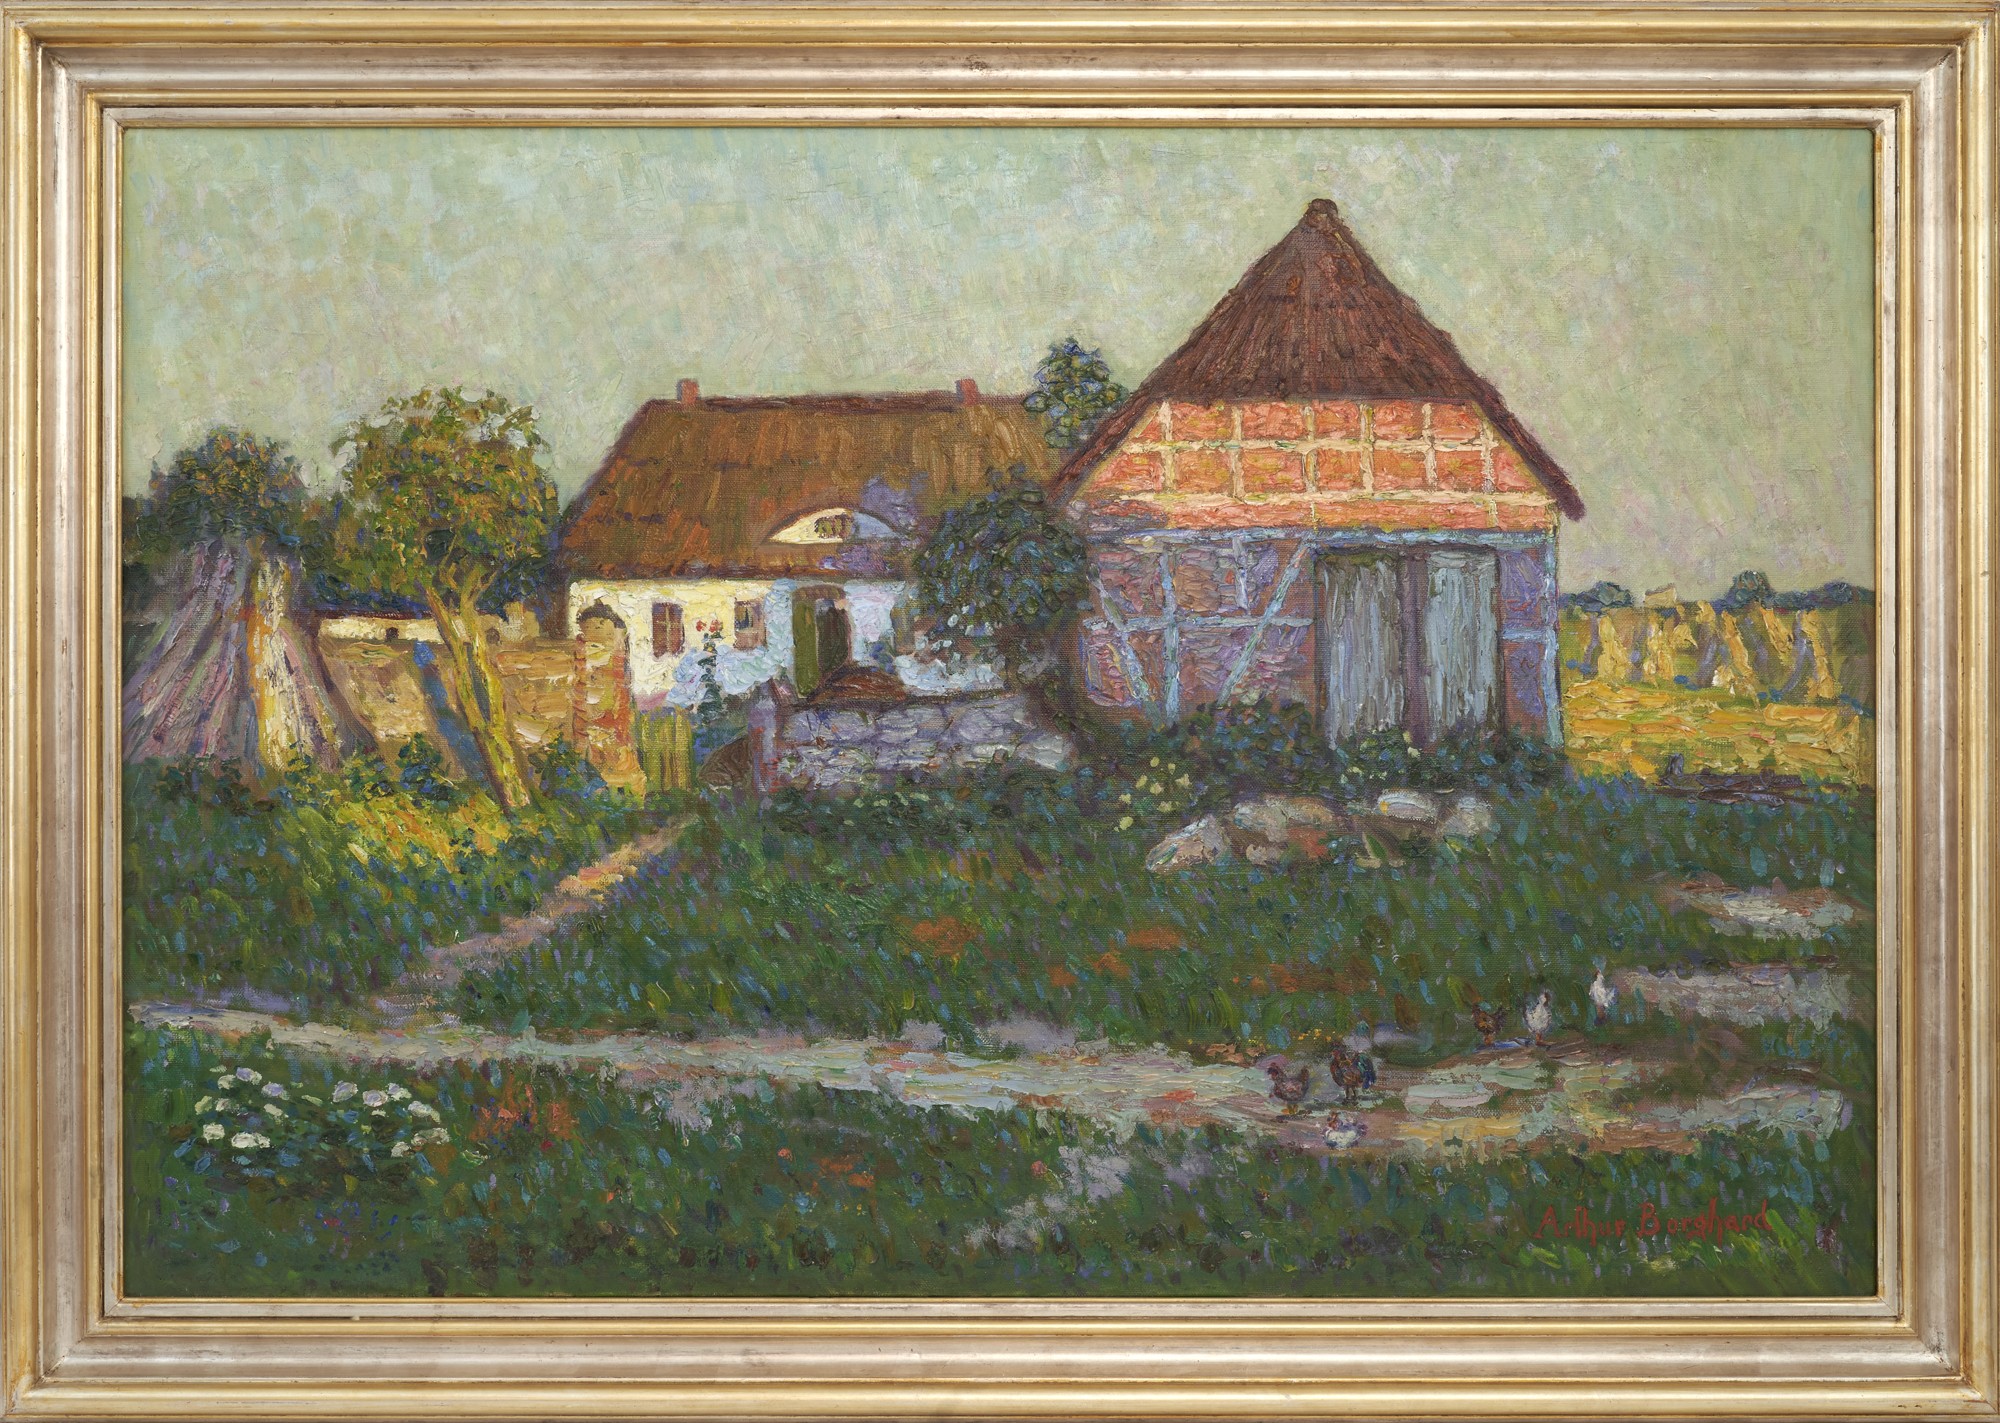 Ölgemälde des Künstlers Arthur Borghard "Bauerngehöft am Kornfeld", entstanden um 1910 (Museum der Havelländischen Malerkolonie CC BY-NC-SA)